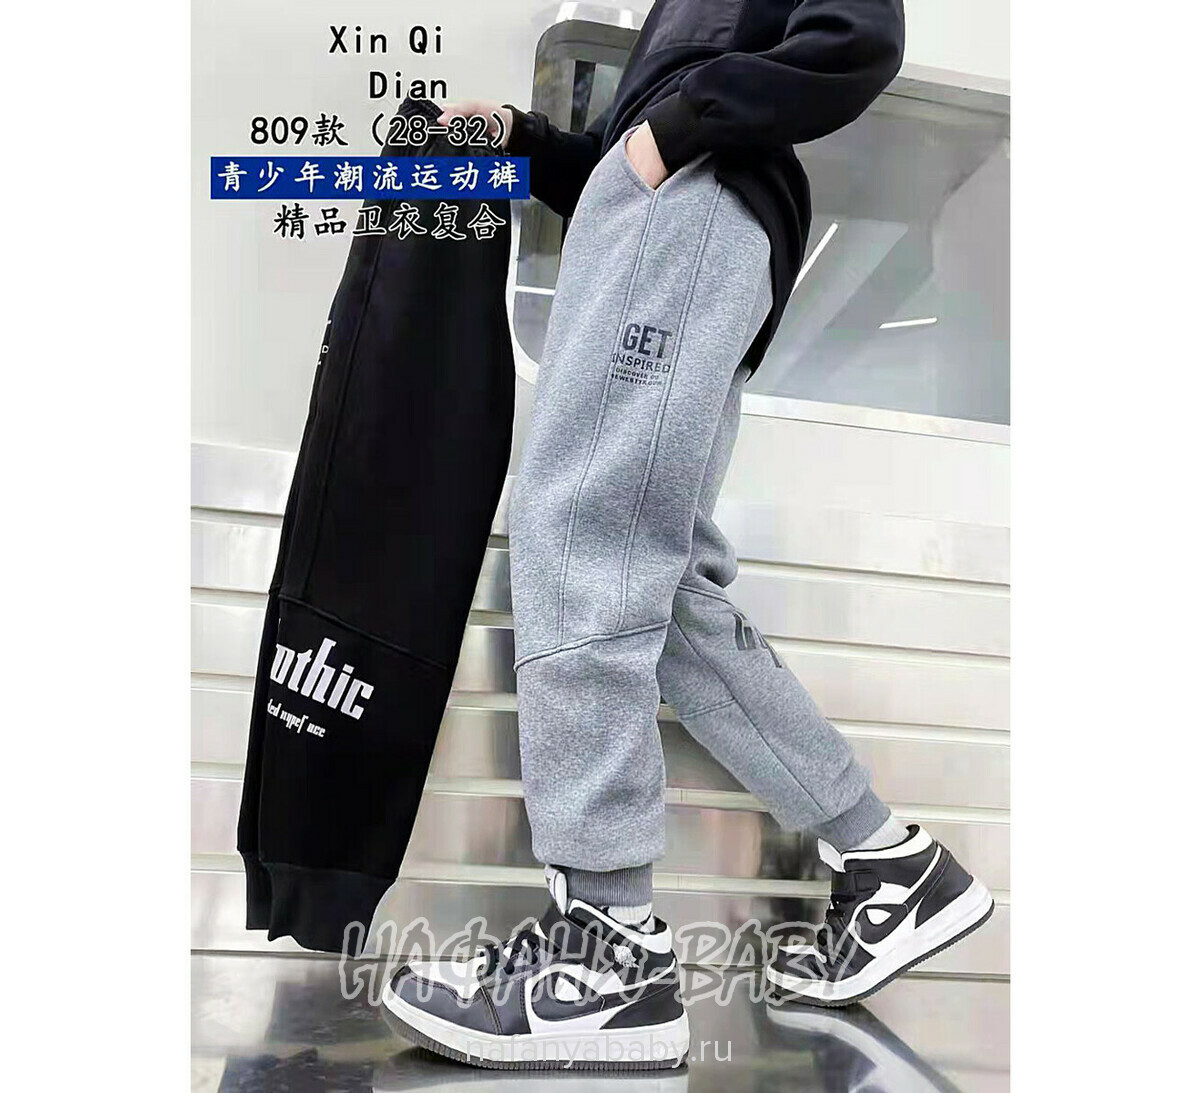 Зимние брюки на флисе XING, купить в интернет магазине Нафаня. арт: 809.